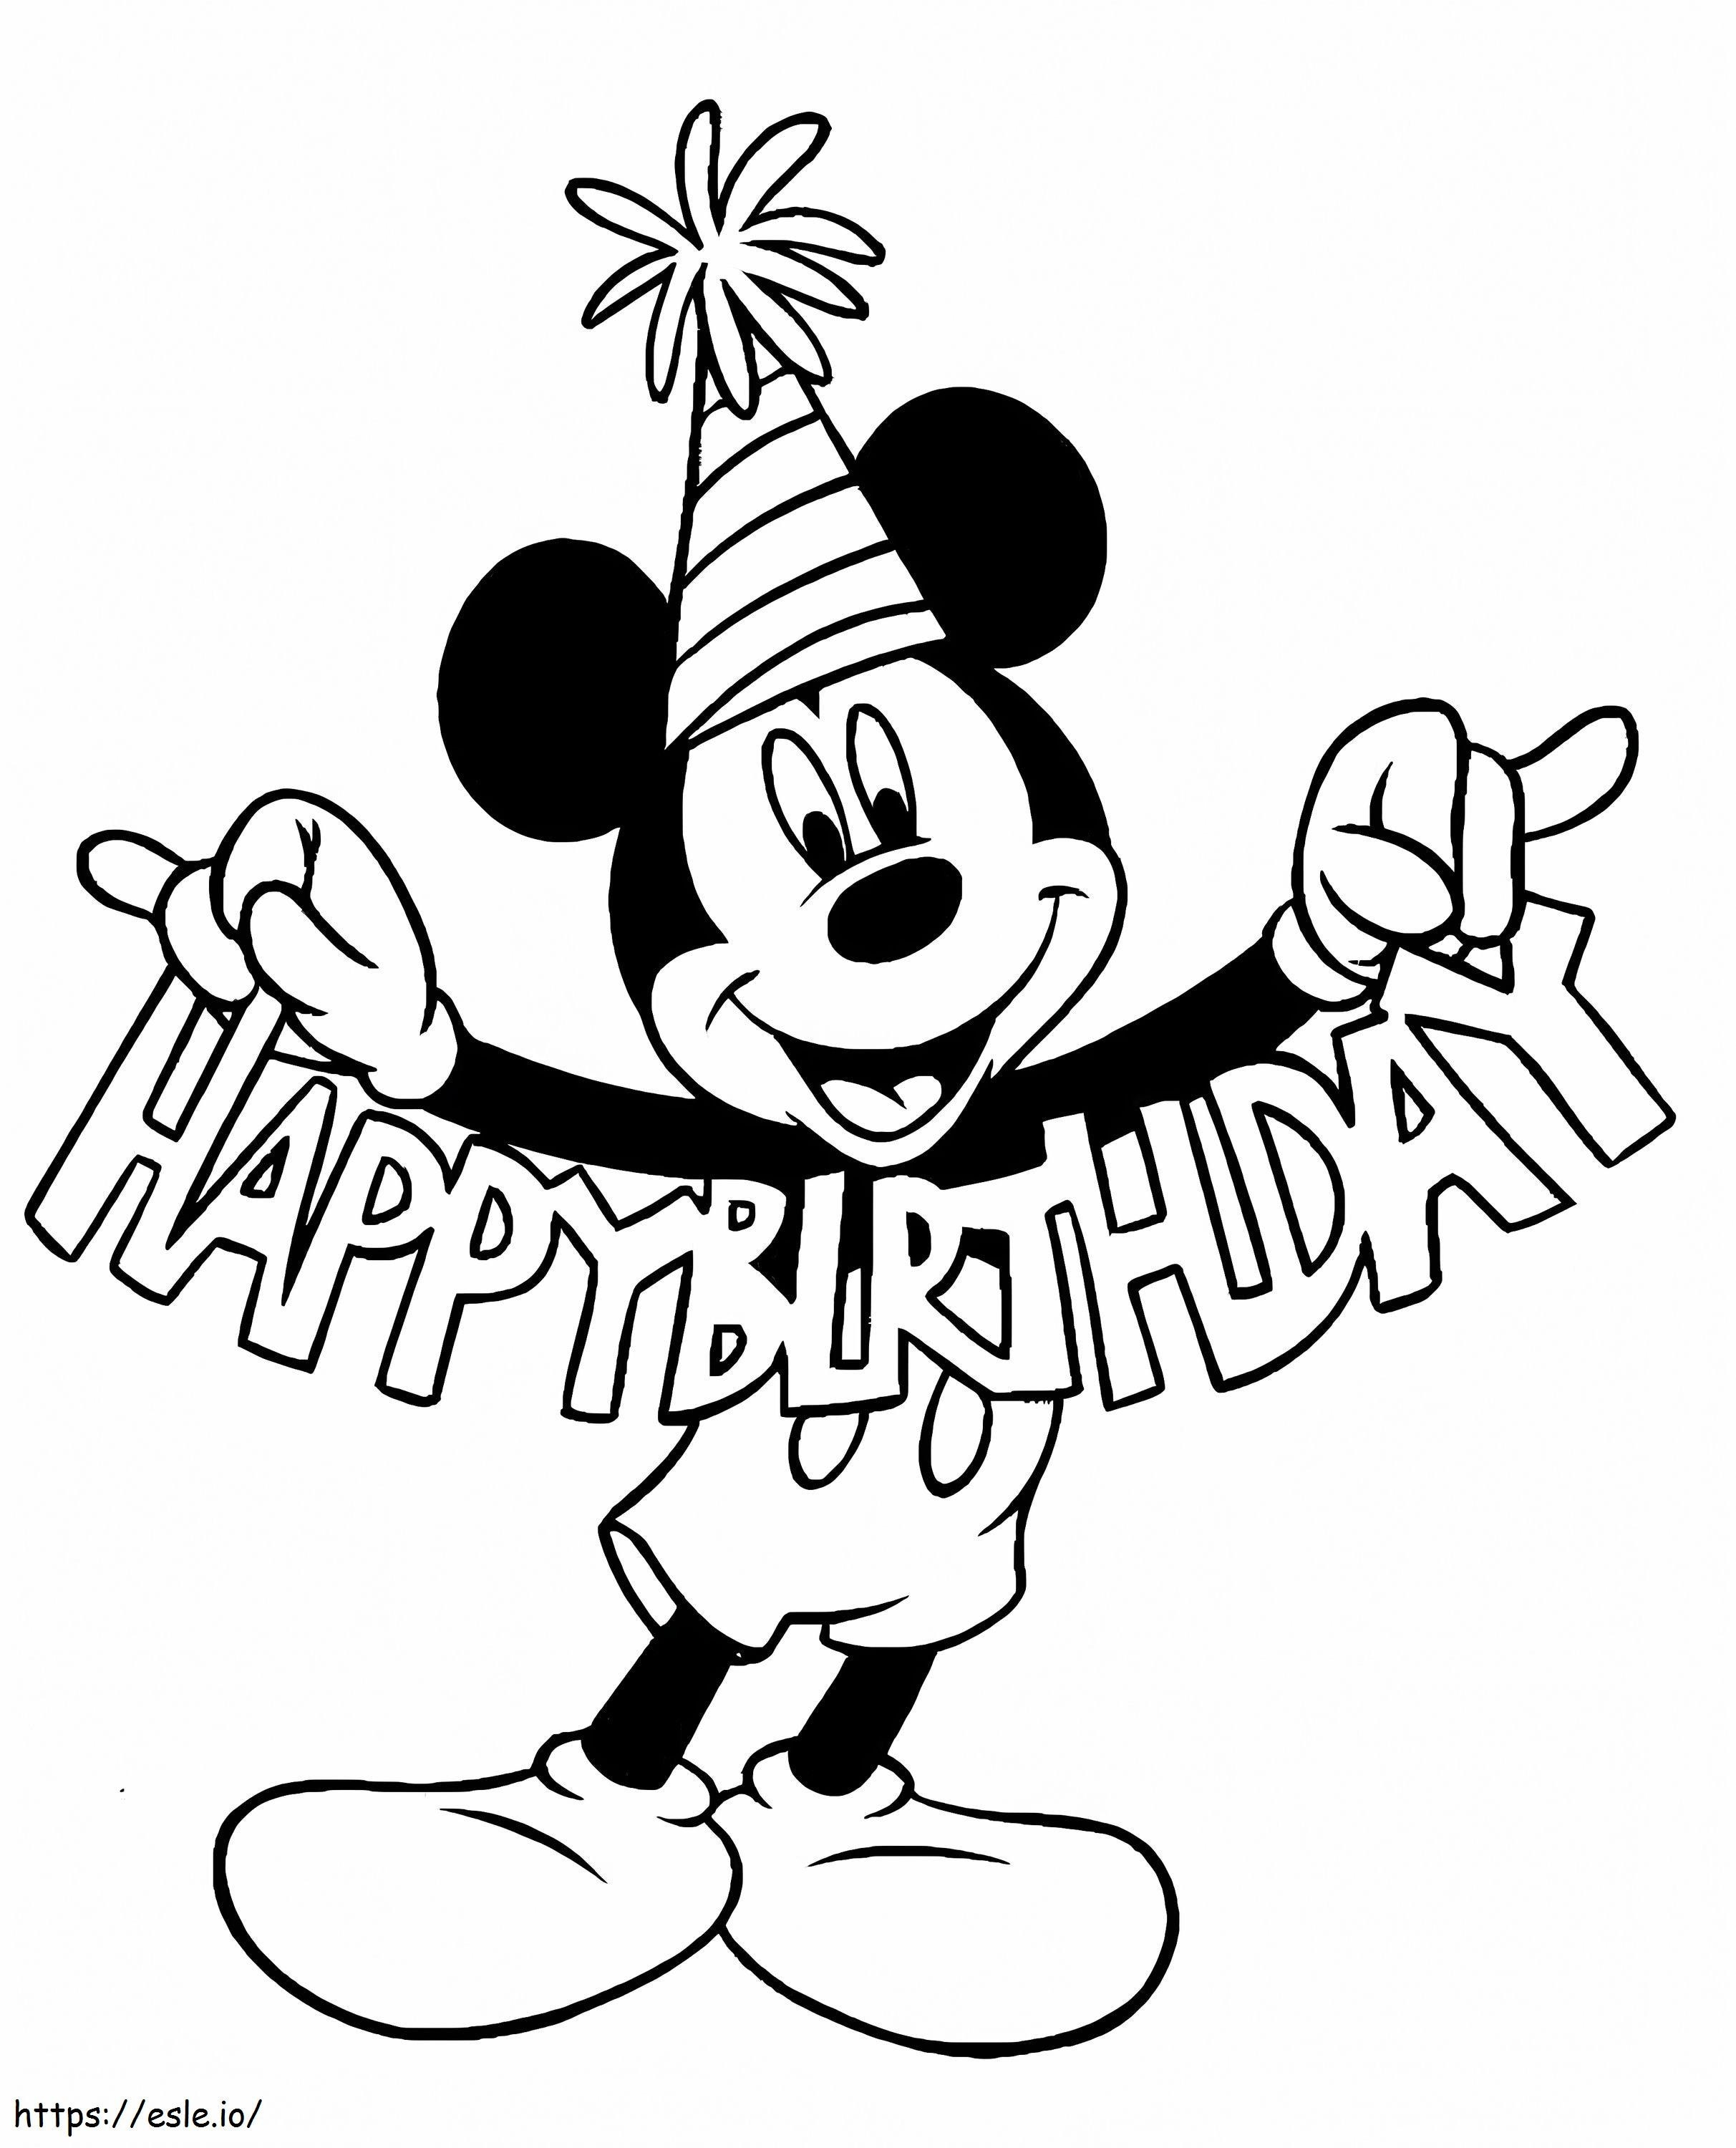 Alles Gute zum Geburtstag von Micky Maus ausmalbilder